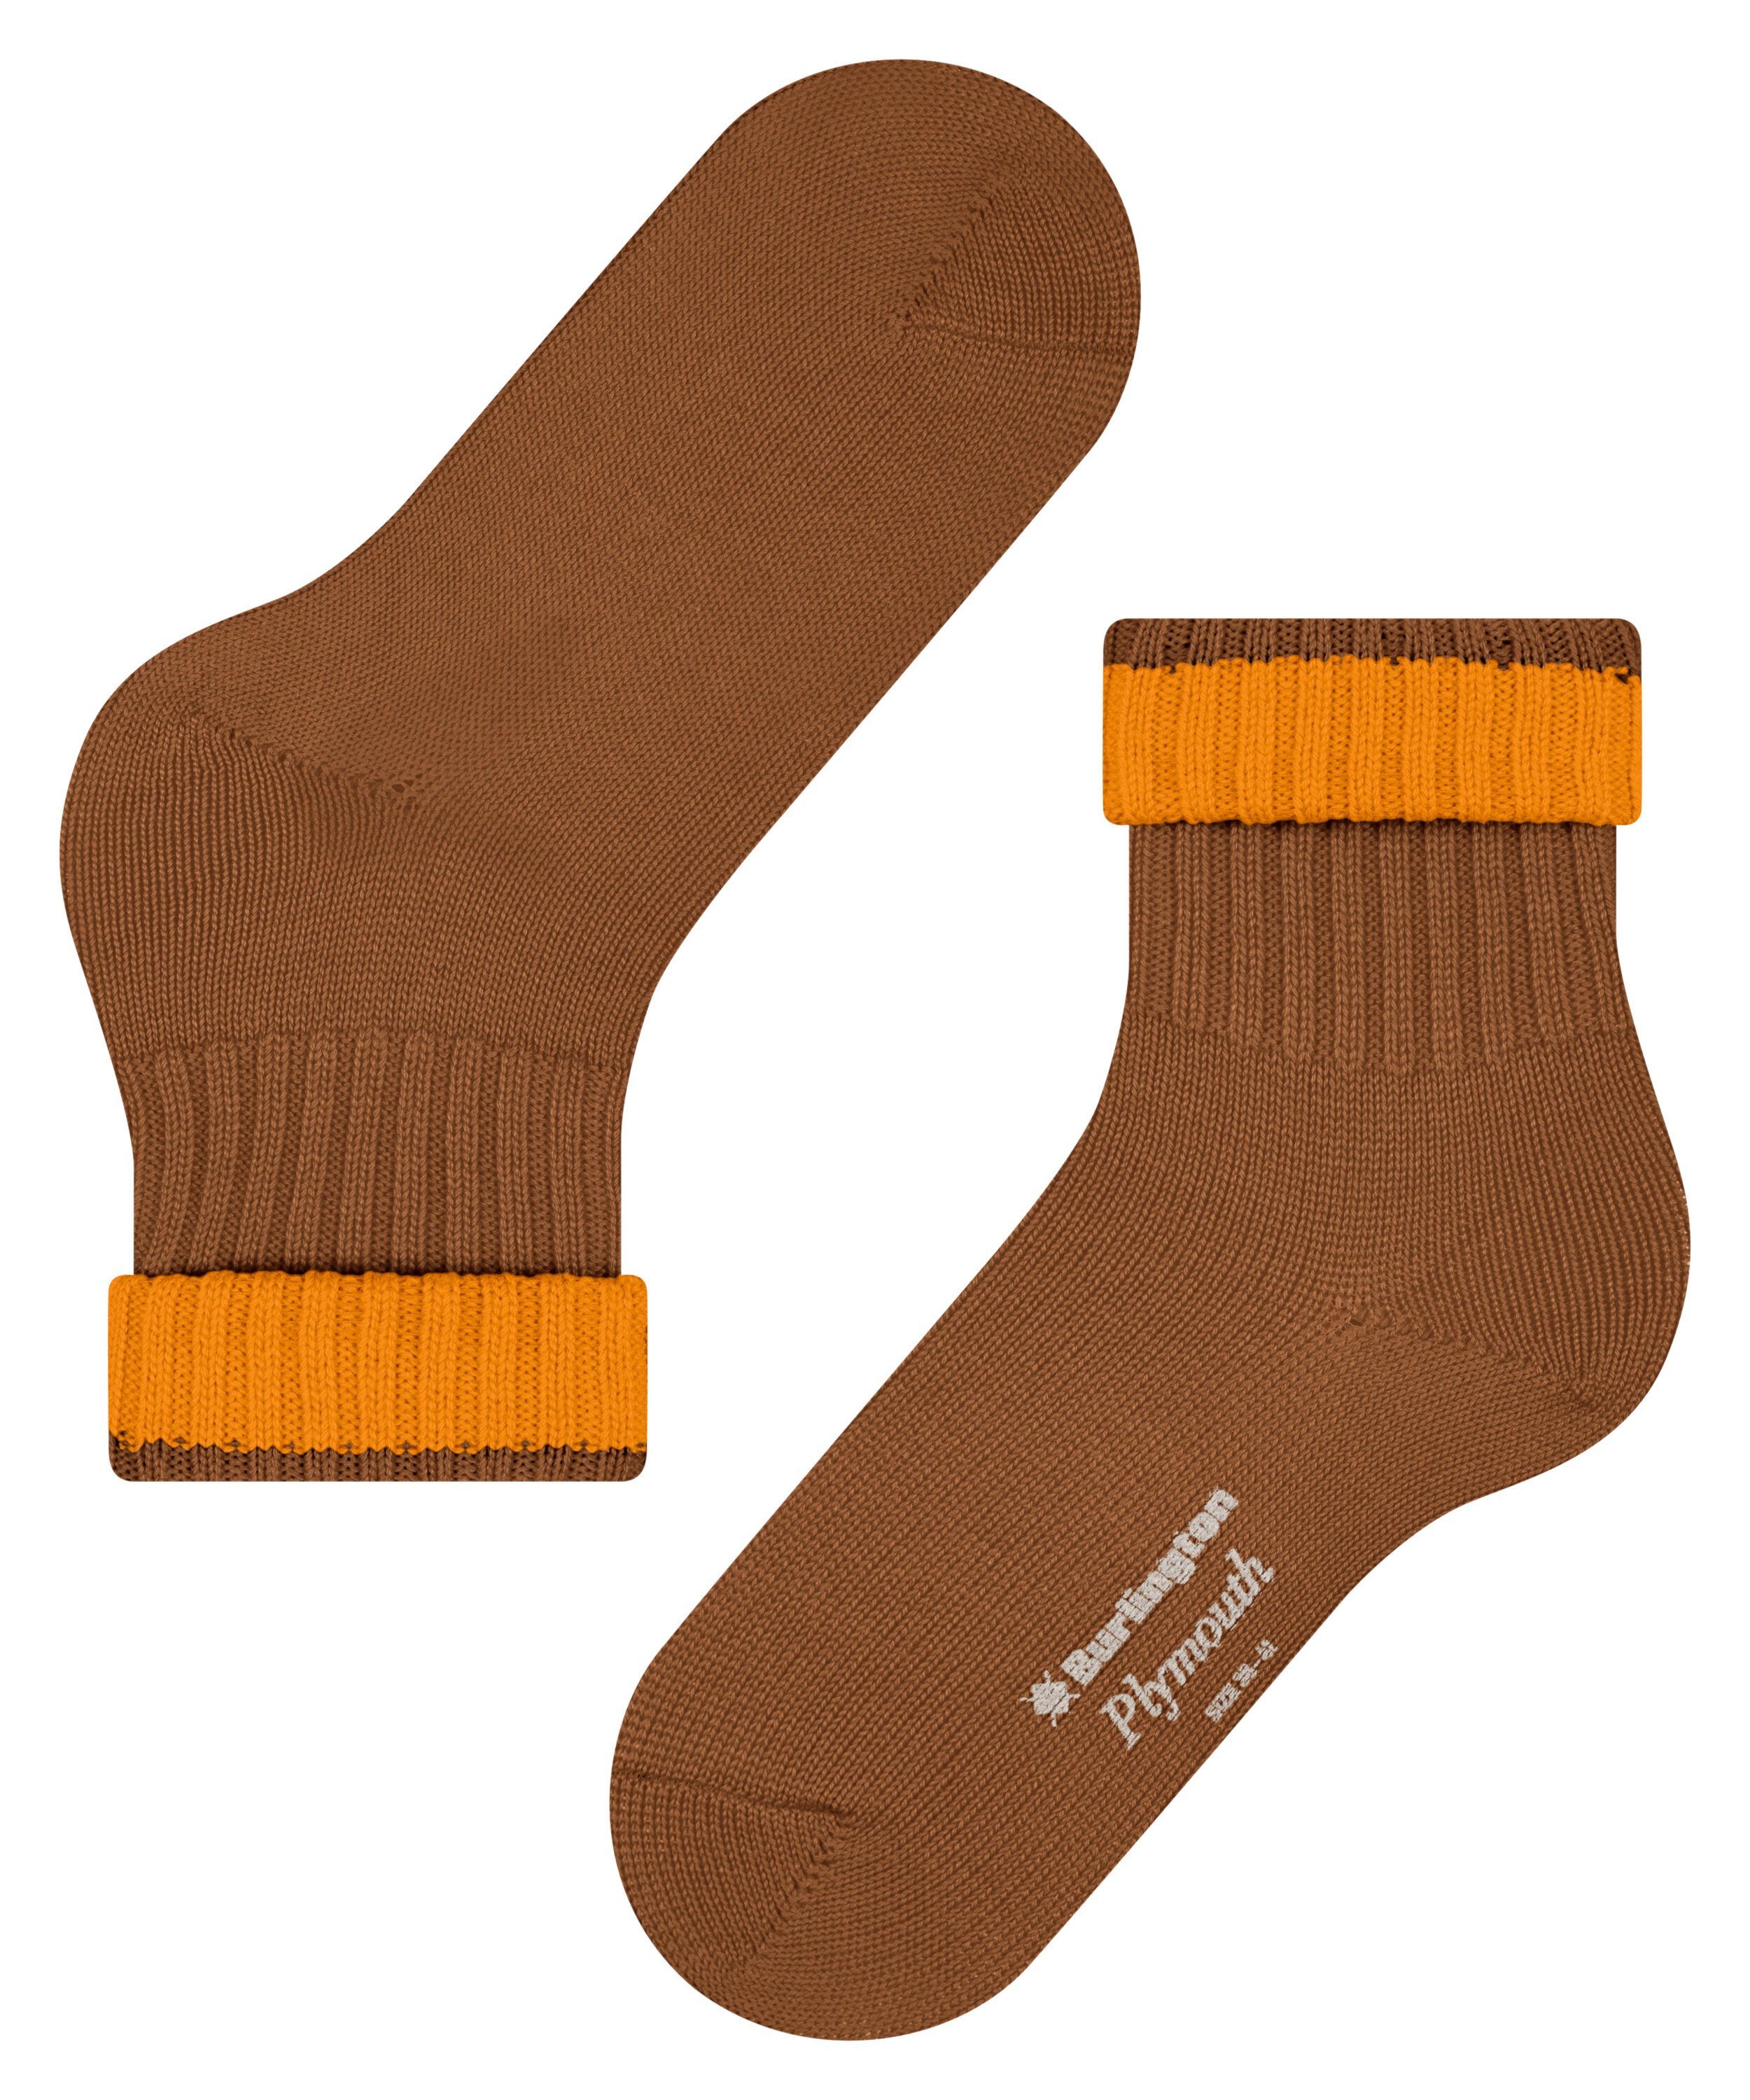 (1-Paar) Plymouth Socken (5190) sierra Burlington